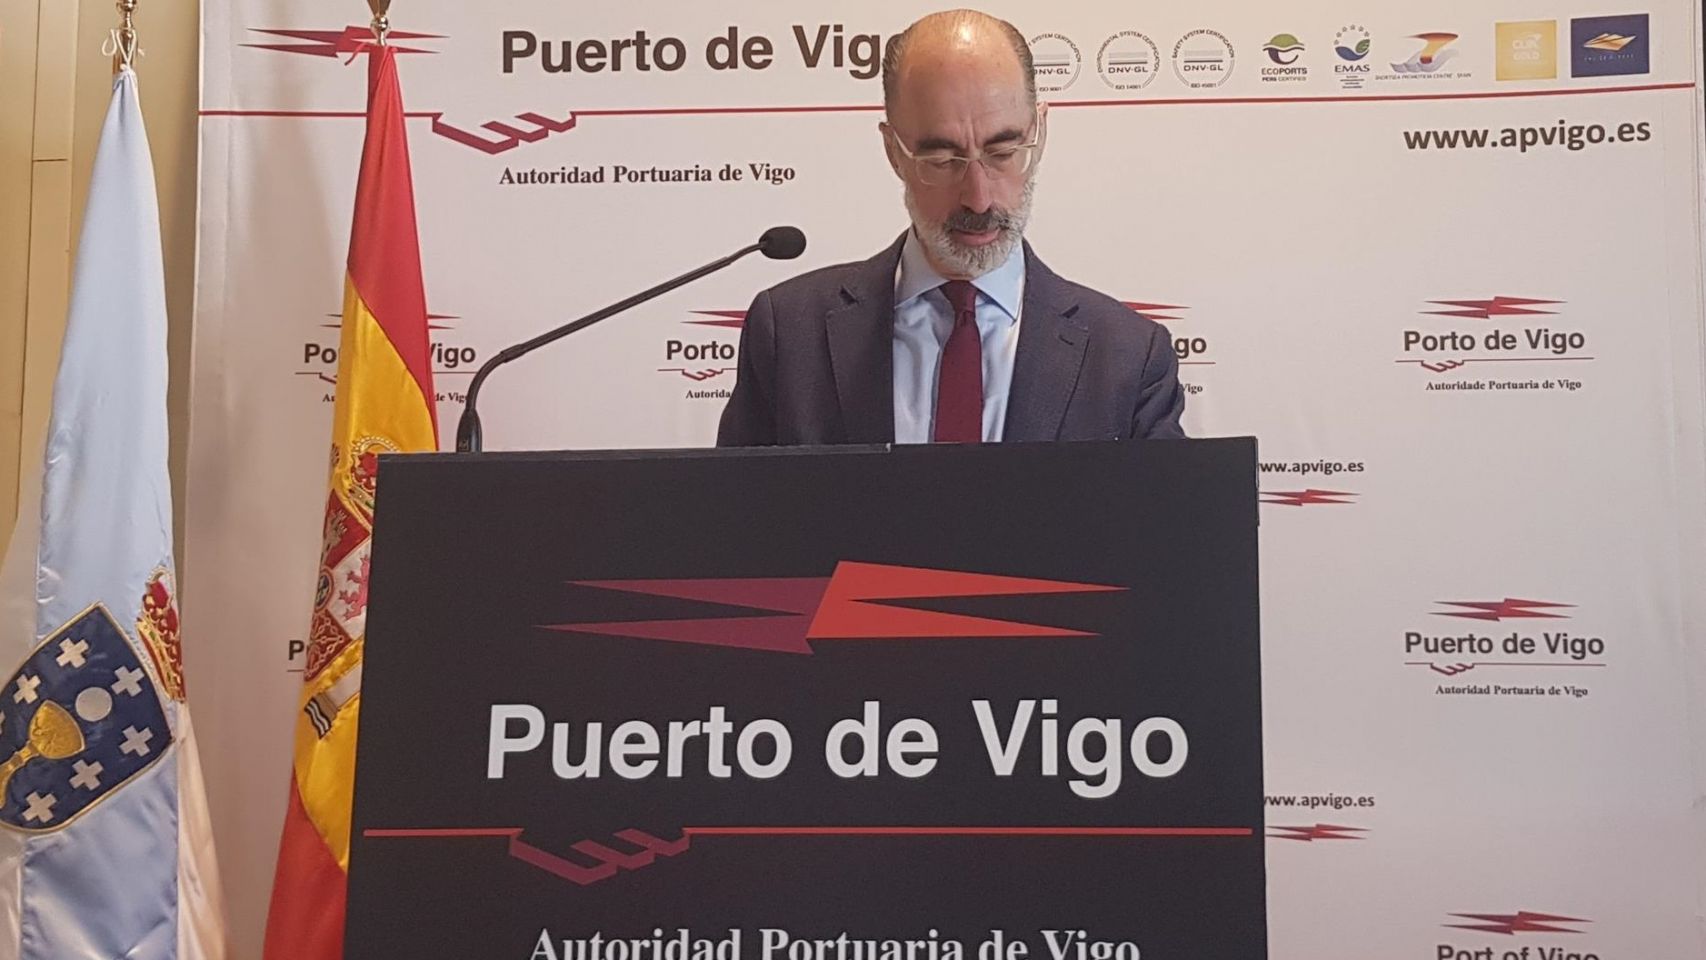 El presidente de la Autoridad Portuaria de Vigo, Jesús Vázquez Almuiña, durante una rueda de prensa.